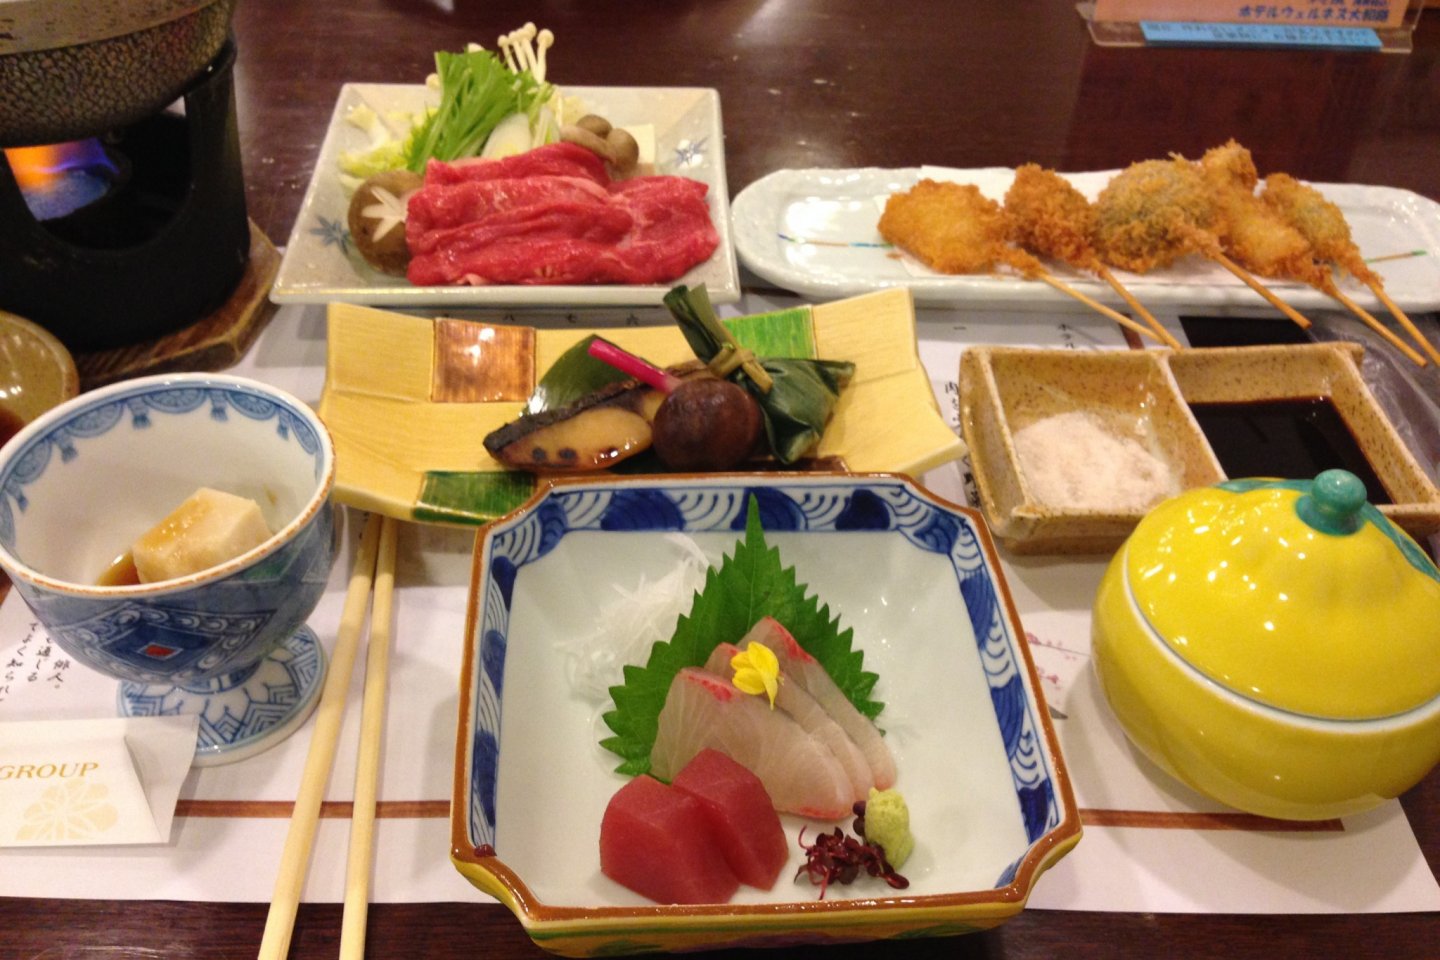 Restauran di Hotel Wellness Yamatoji menyajikan beberapa masakan tradisional yang menarik.